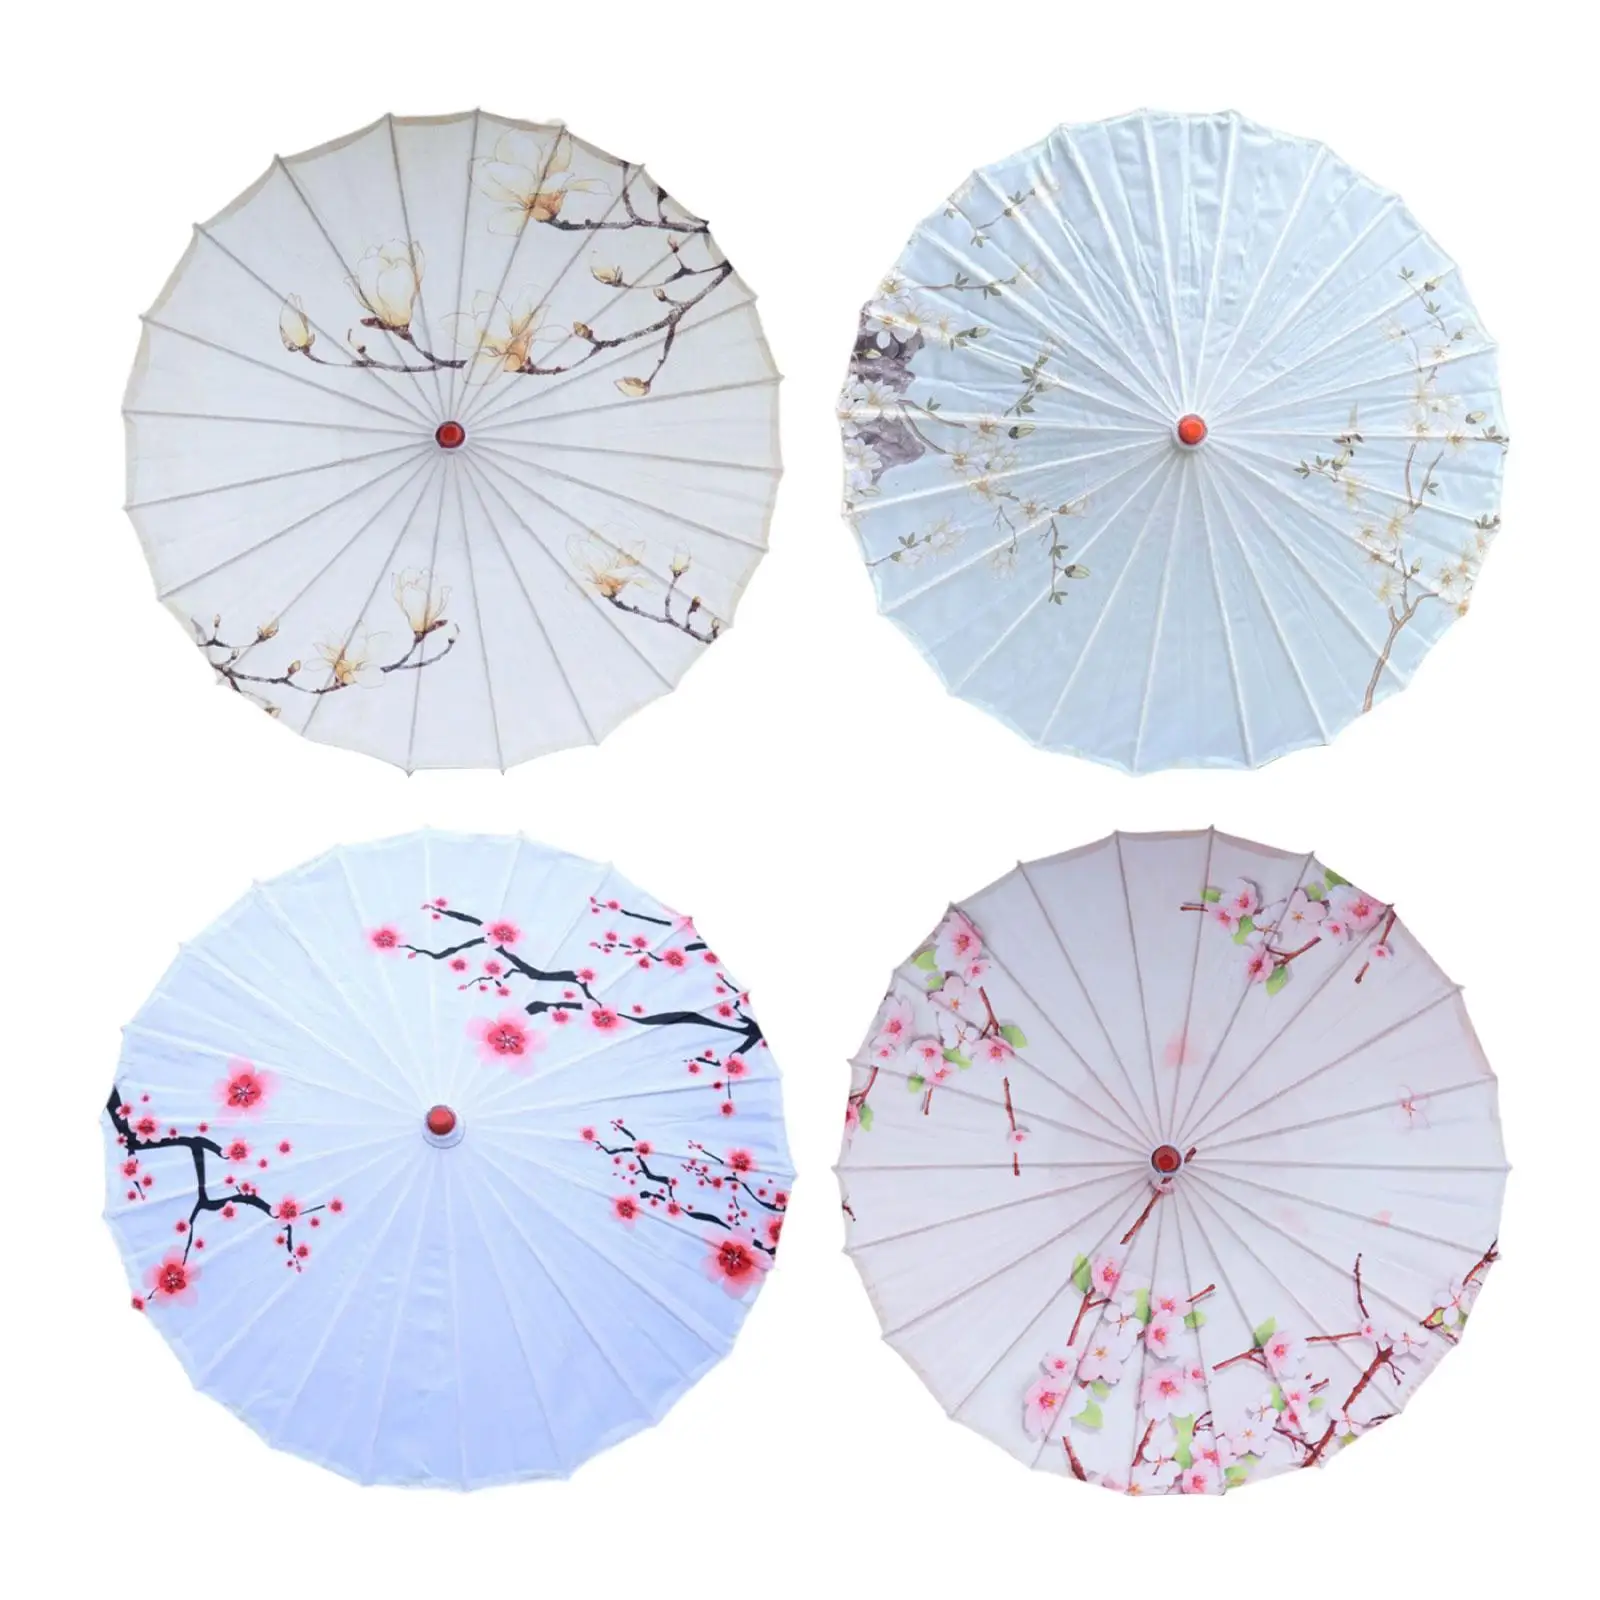 

Танцевальный зонт, искусственный бумажный зонт для фотографий, Искусственный ландшафт, садовый декор